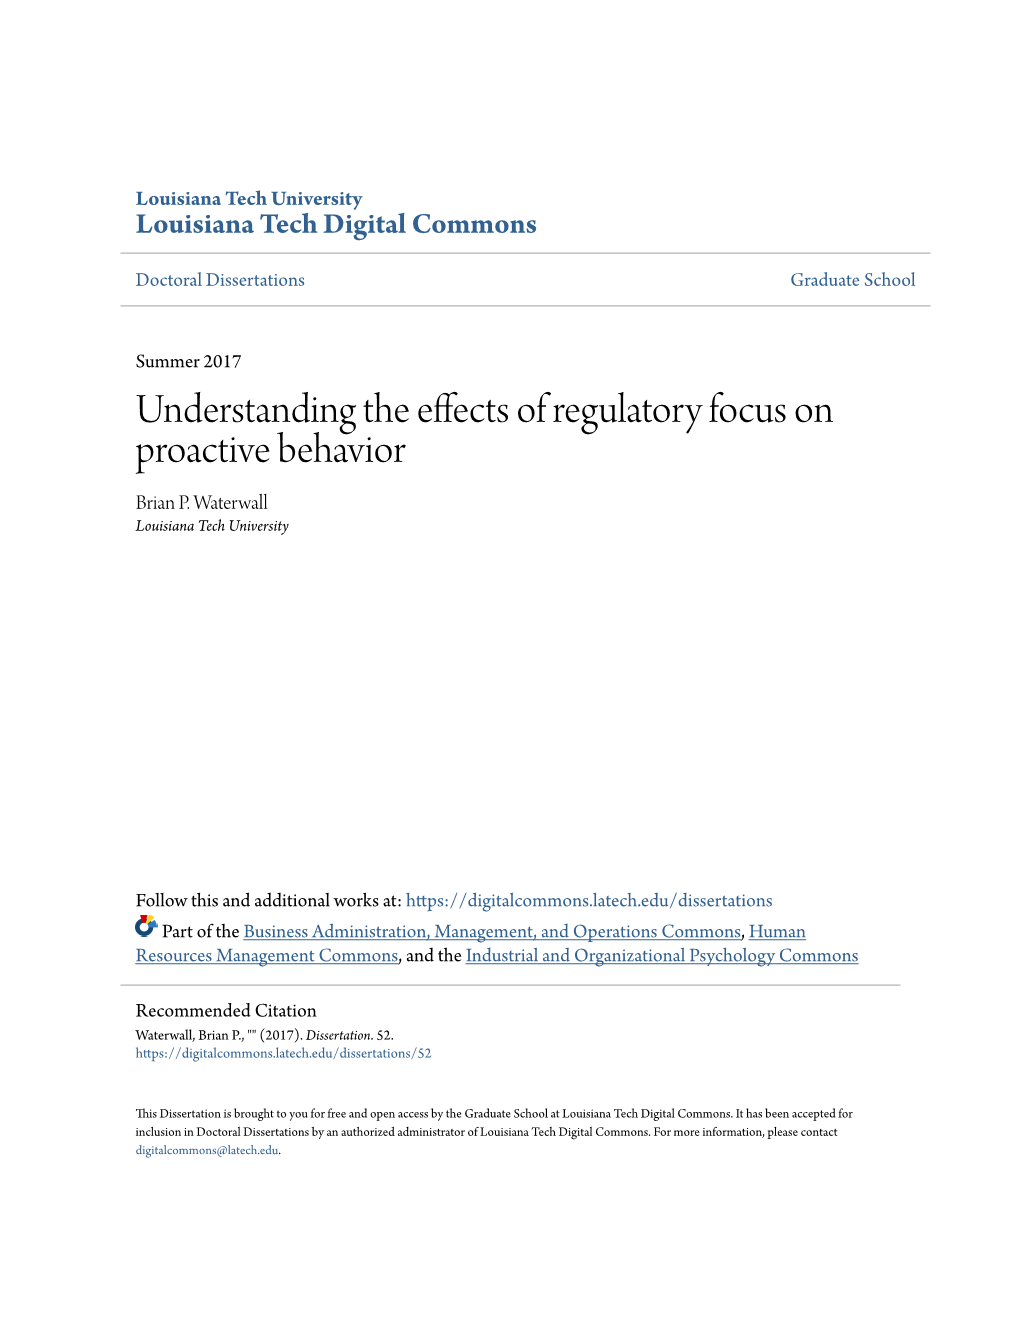 Understanding the Effects of Regulatory Focus on Proactive Behavior Brian P